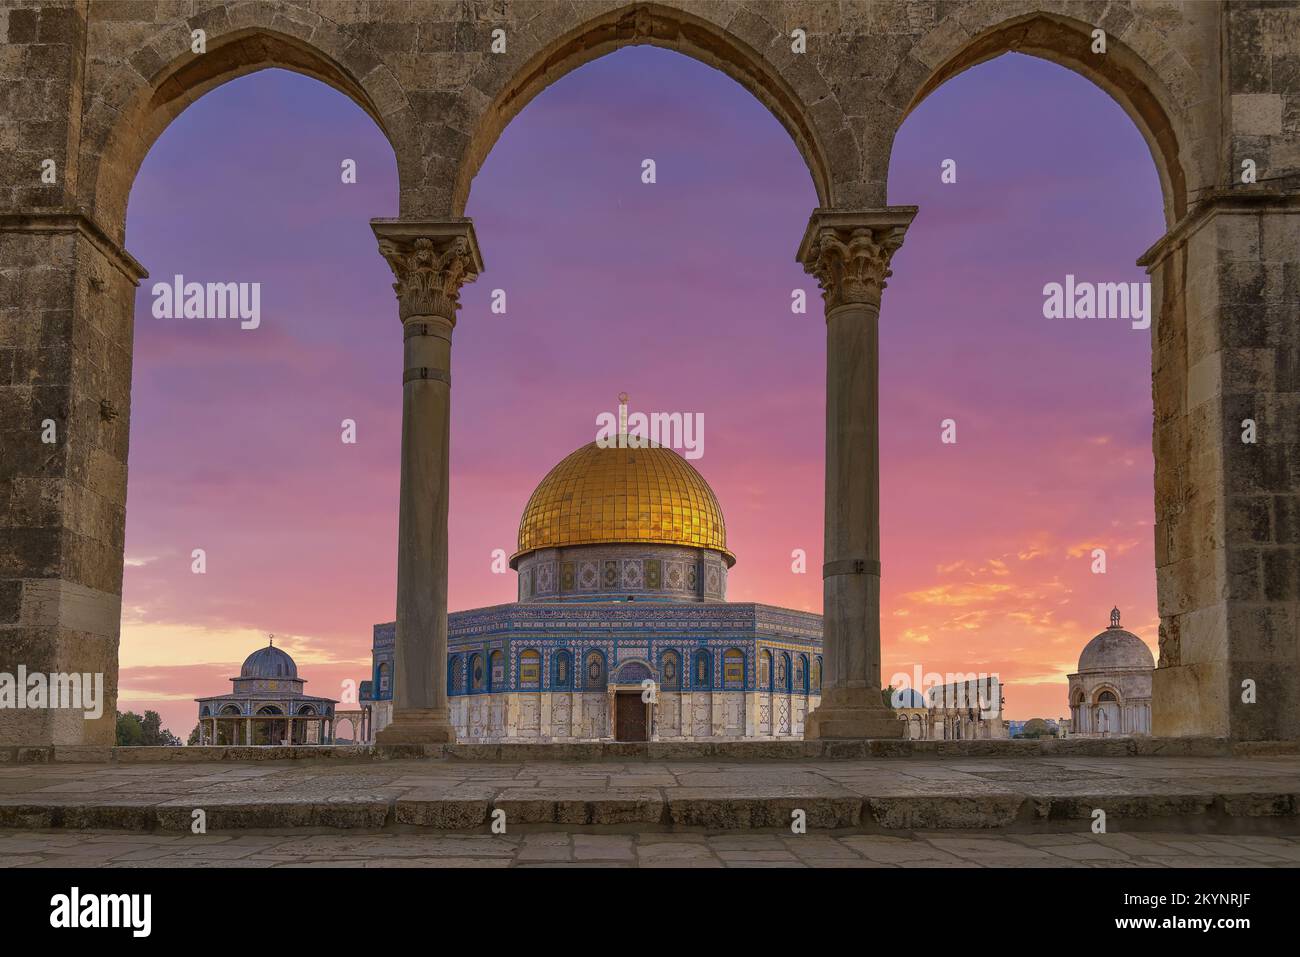 Jérusalem, Israël - 1 décembre 2022. Le dôme de roche sur le mont du temple, Jérusalem, Israël. C'est un sanctuaire islamique situé dans la vieille ville de Jérusalem. Banque D'Images